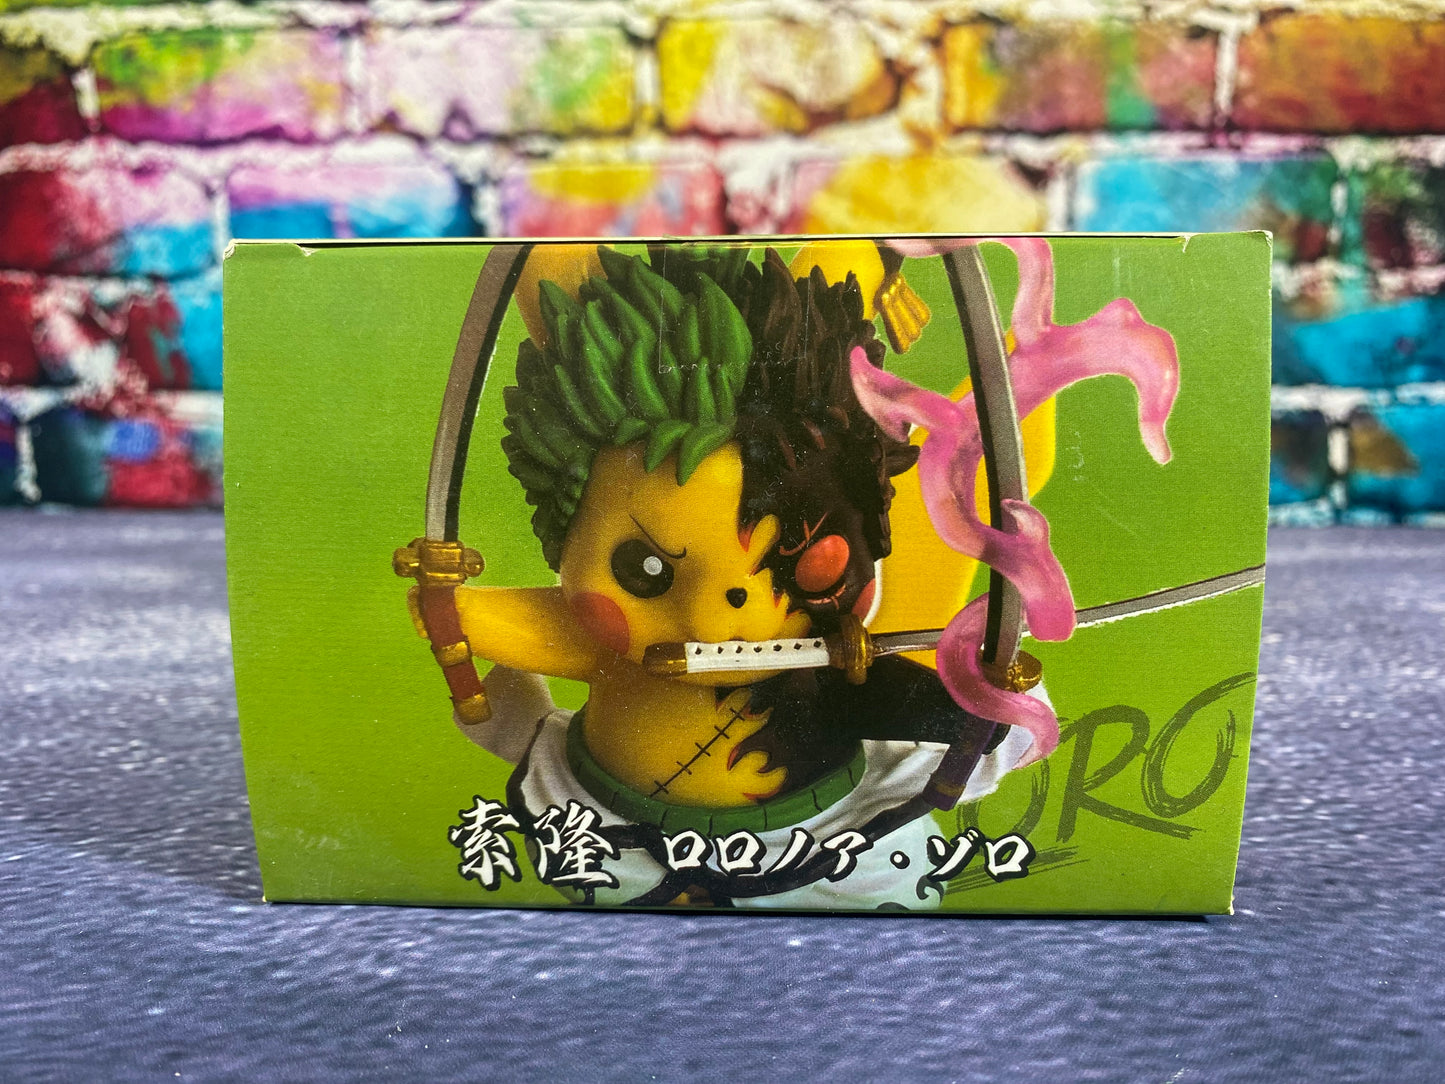 Pikachu Zoro